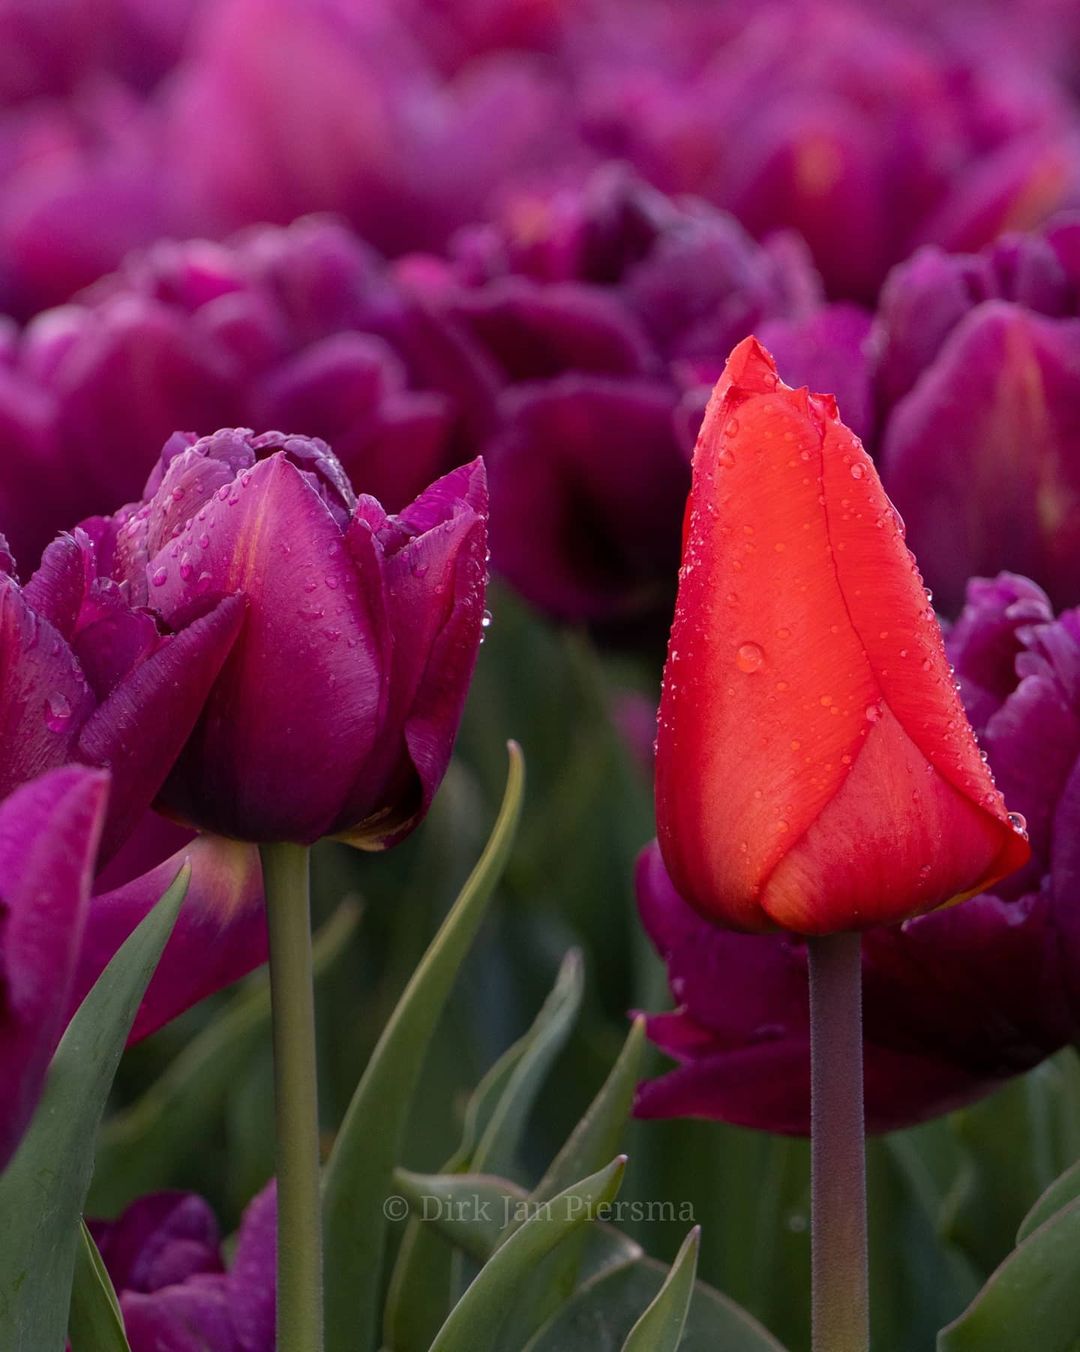 Поля цветущих тюльпанов в Нидерландах, аромат которых дурманит даже через дисплей Голландия,Нидерланды,цветы